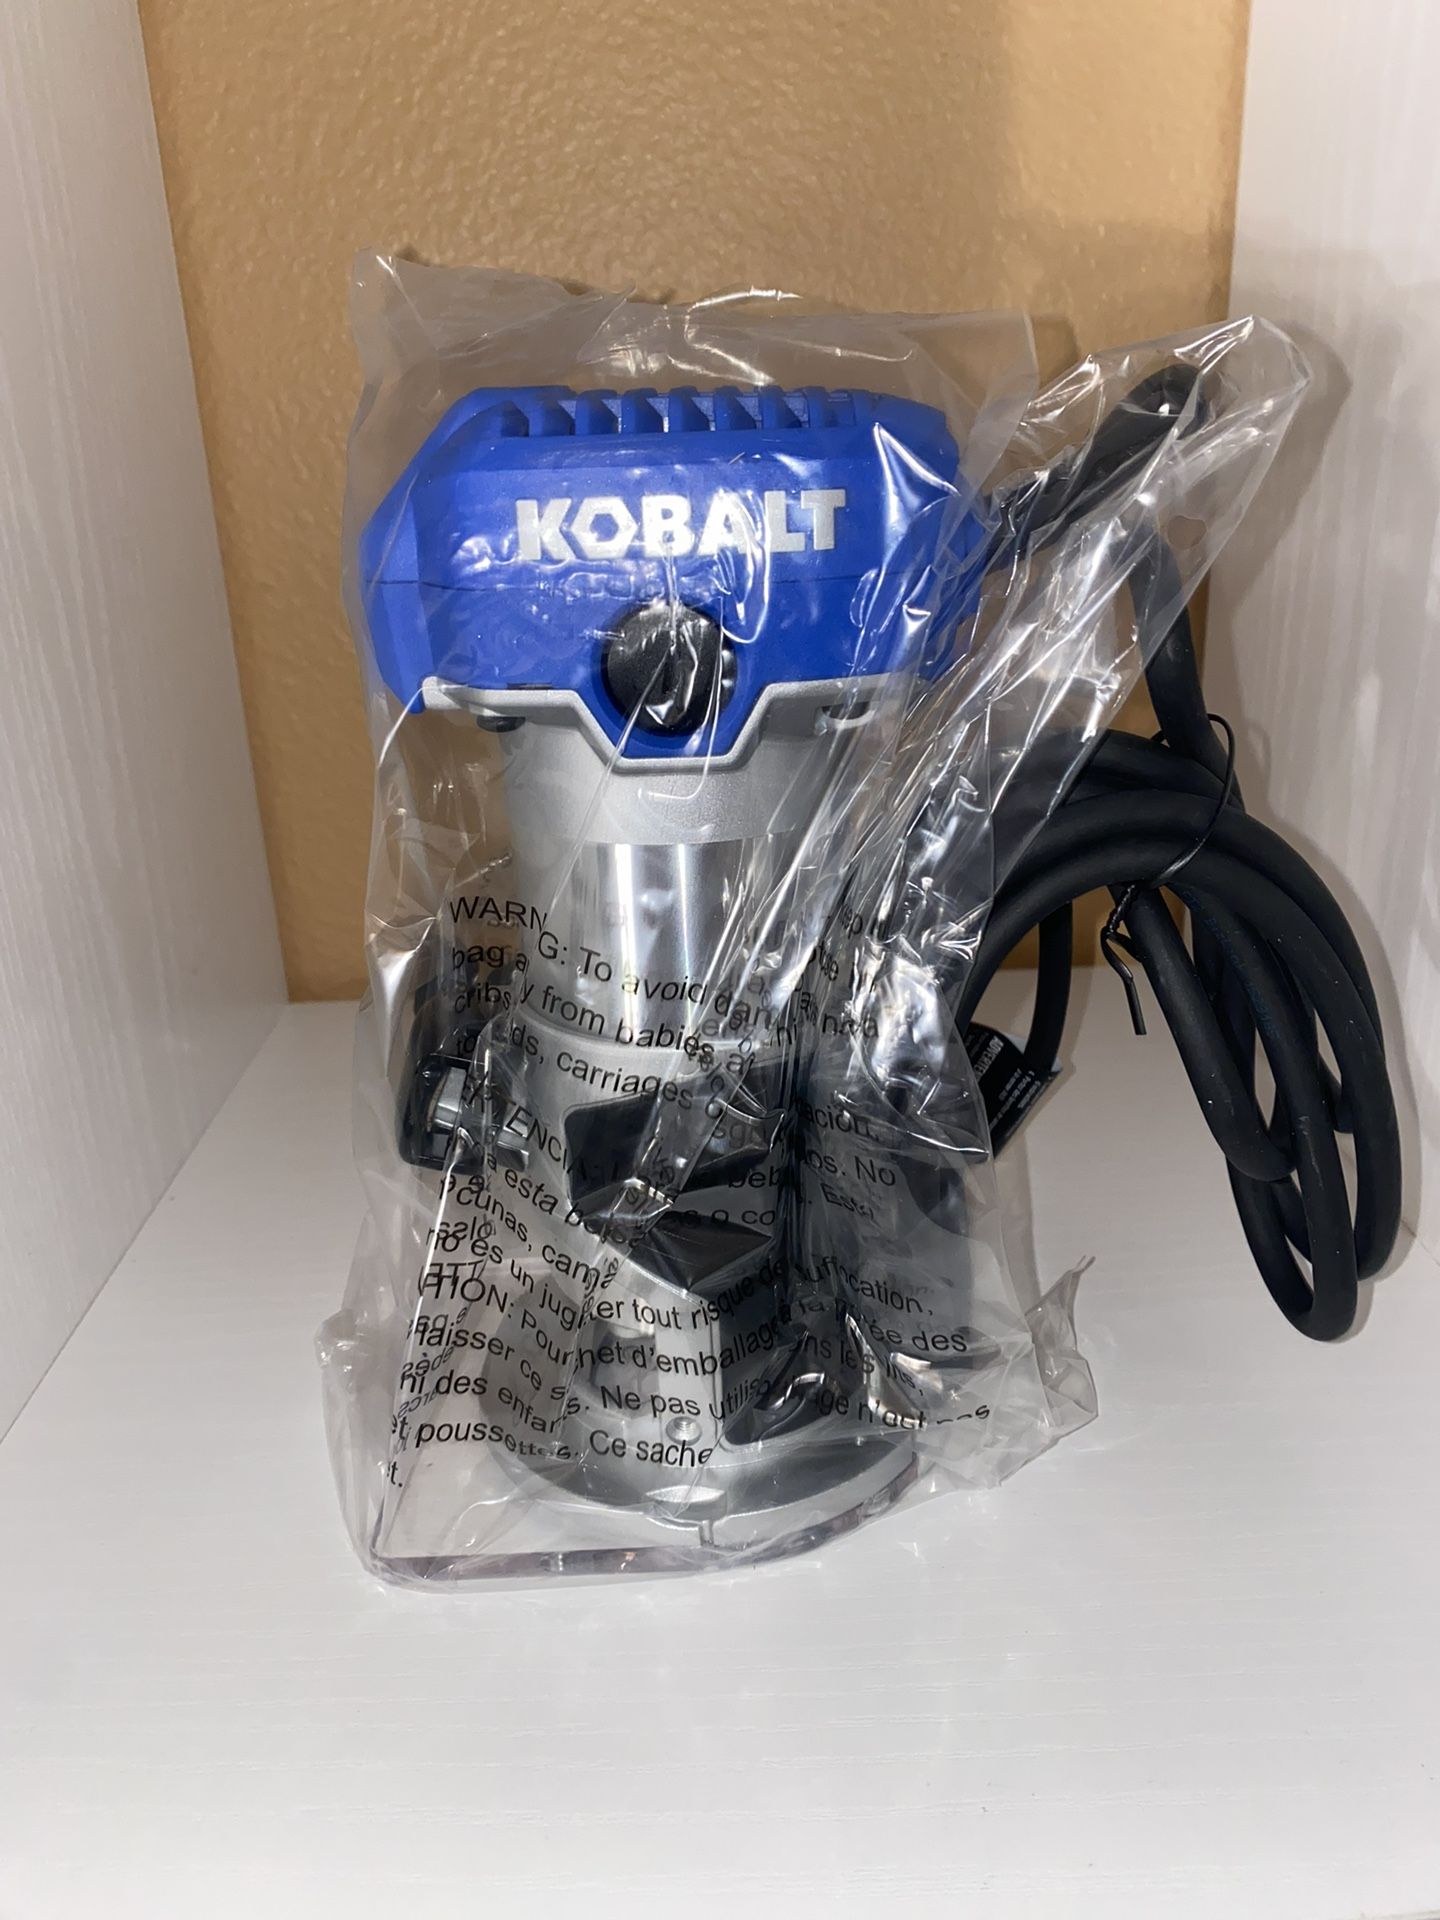 New Kobalt Router